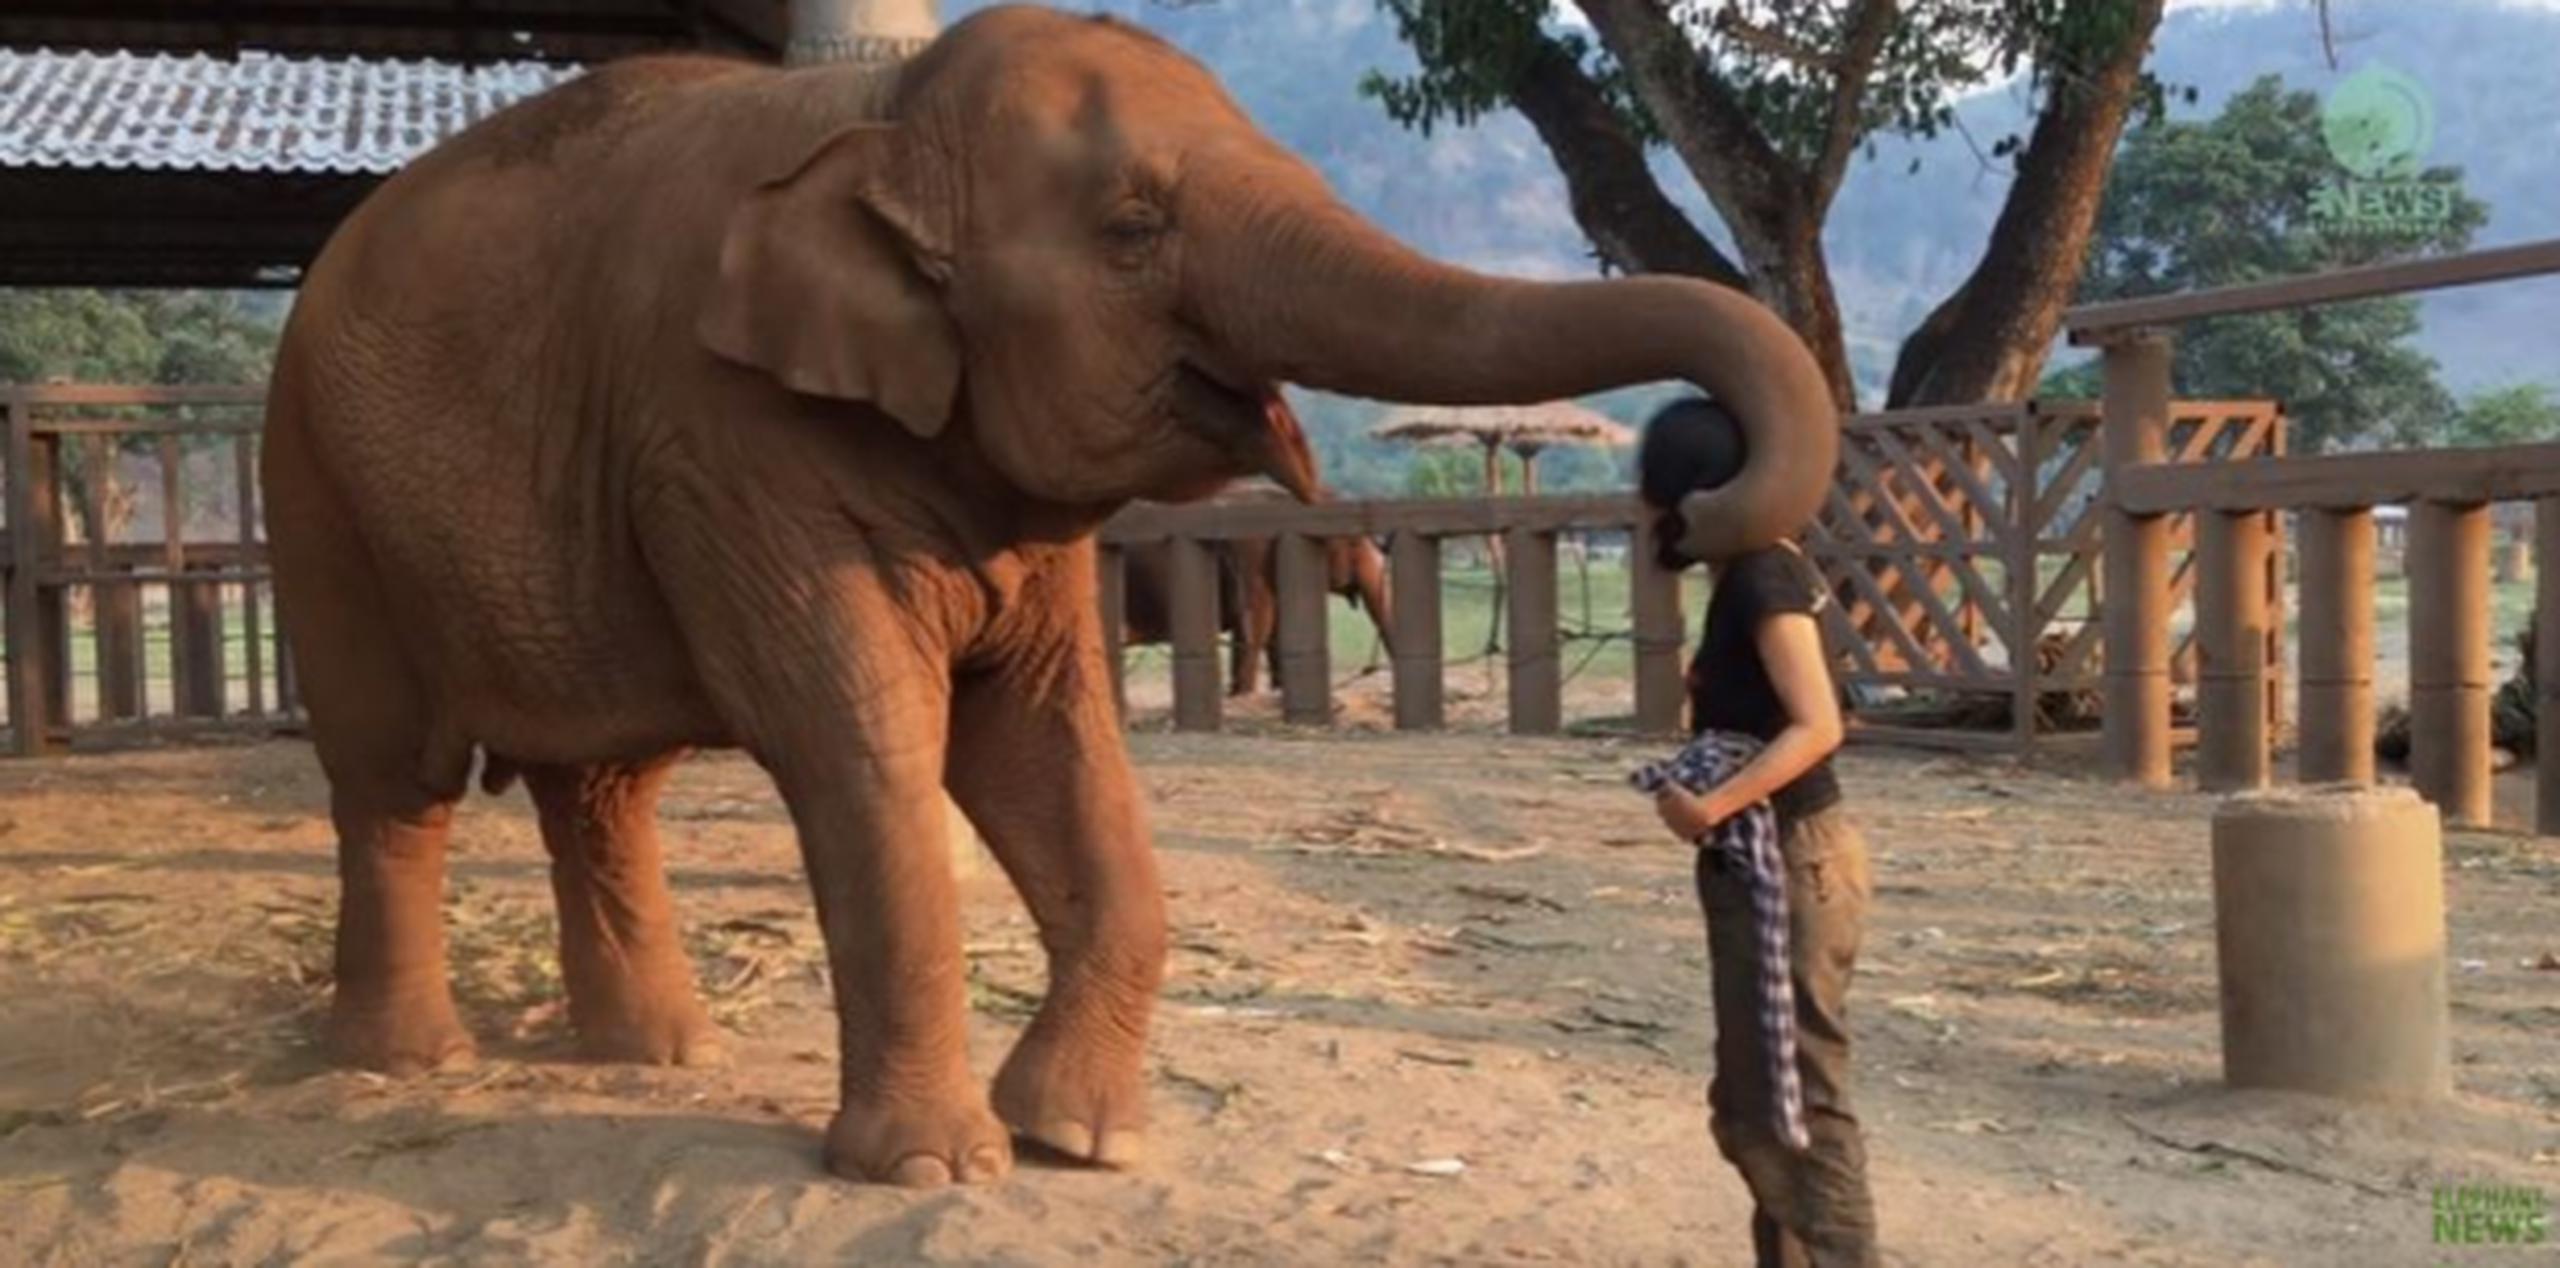 La vida de Faanmai, un elefante asiático, y su querida cuidadora encaja perfectamente en este marco. (YouTube)